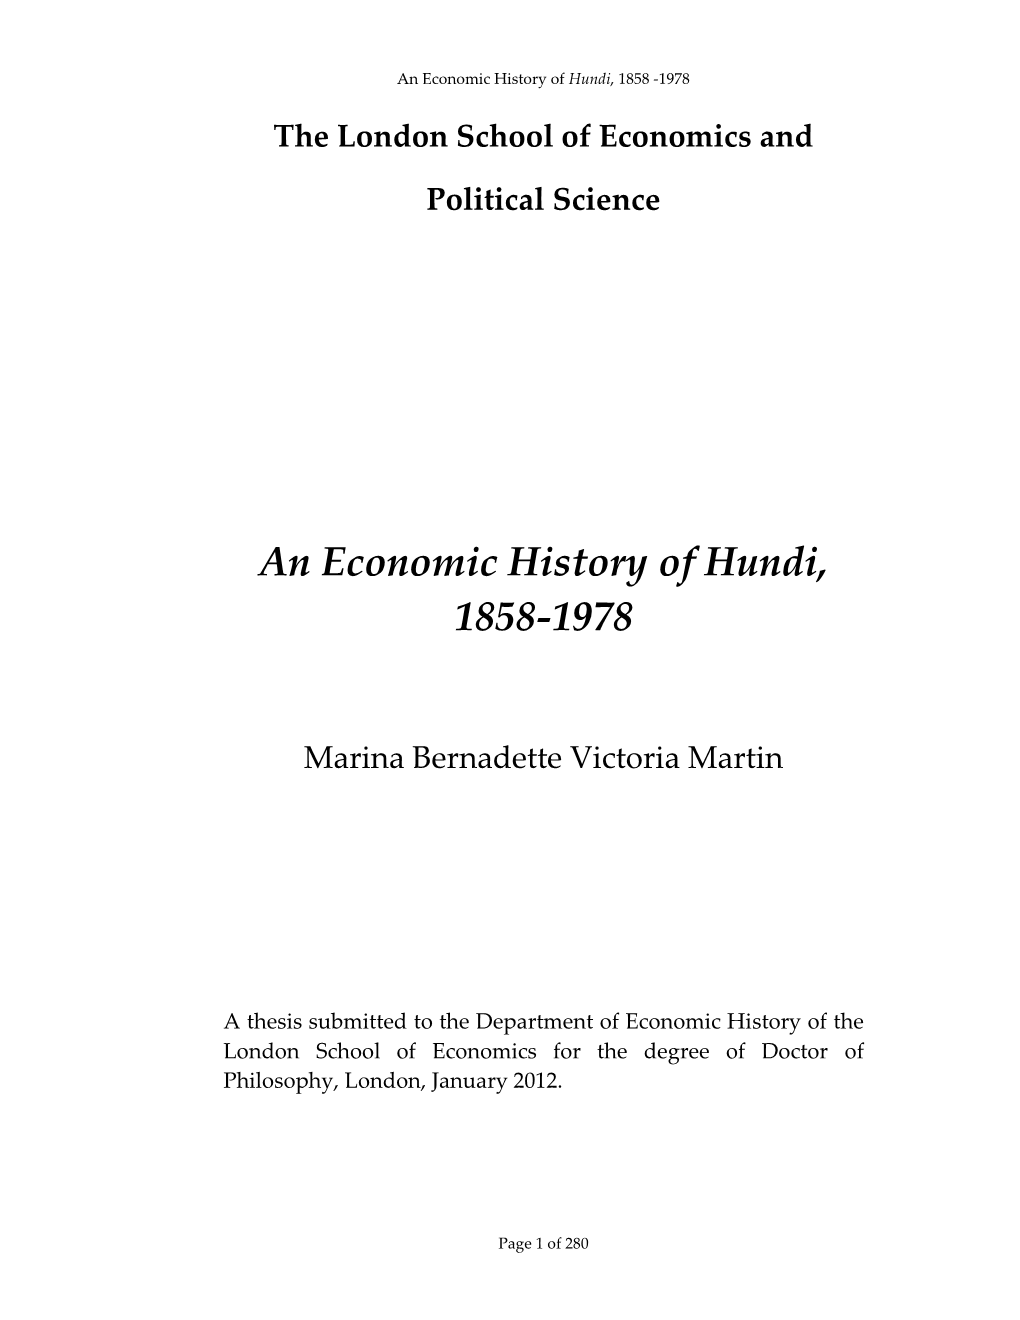 An Economic History of Hundi, 1858-1978